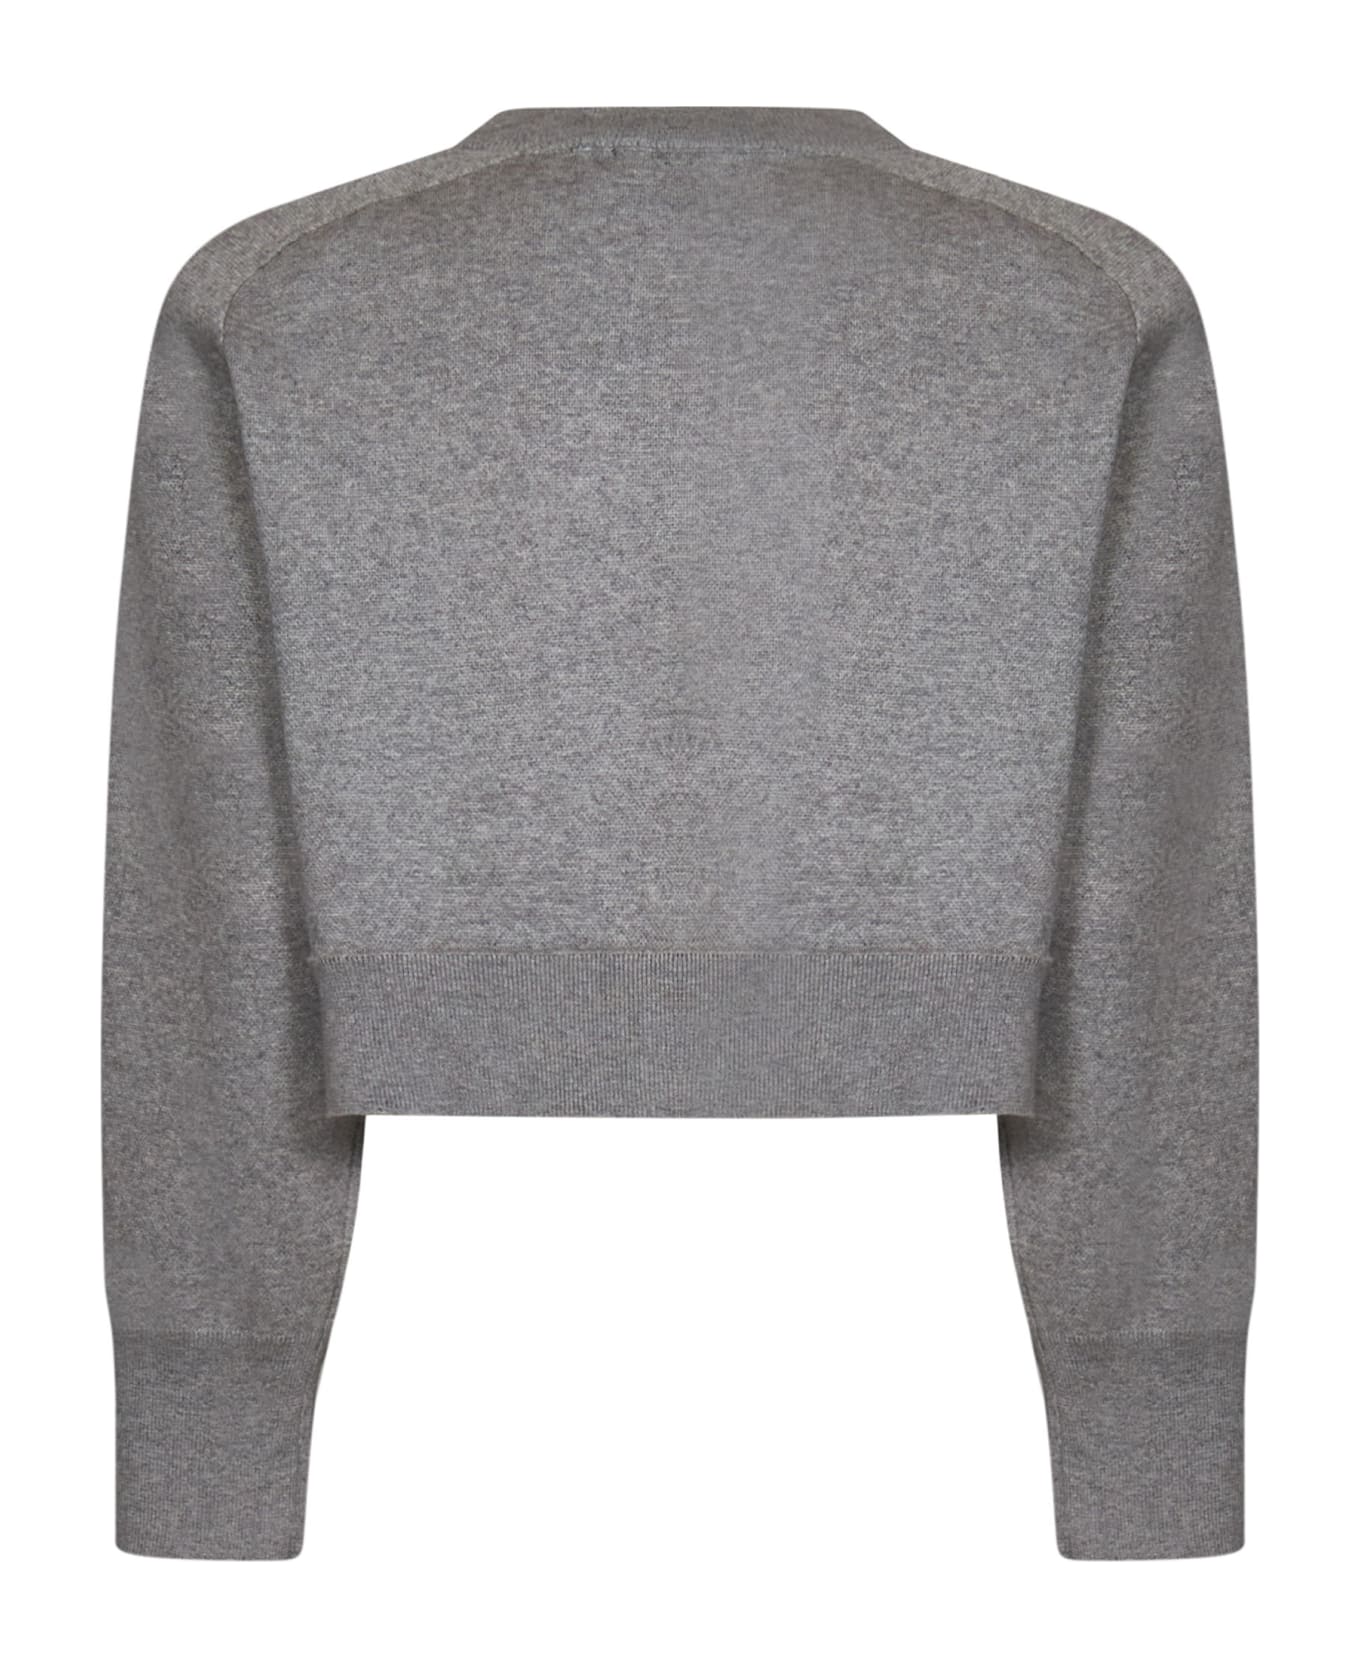 Rotate by Birger Christensen Sweatshirt - Grey